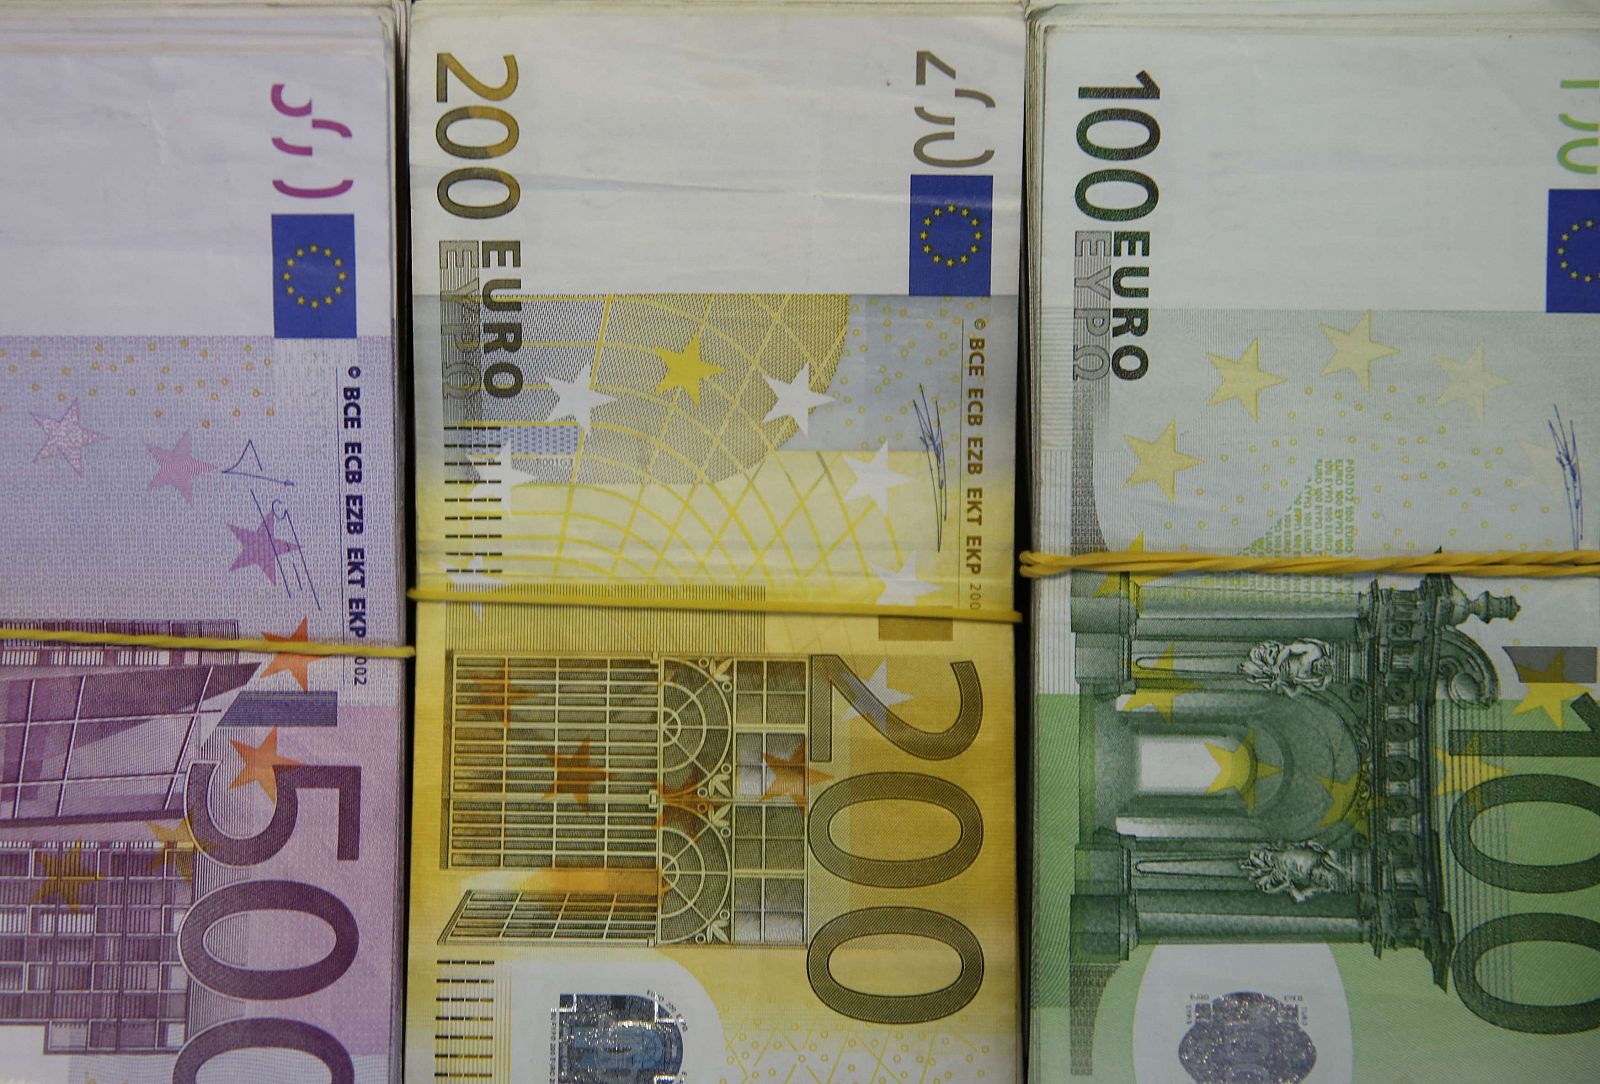 Billetes de 100, 200 y 500 euros